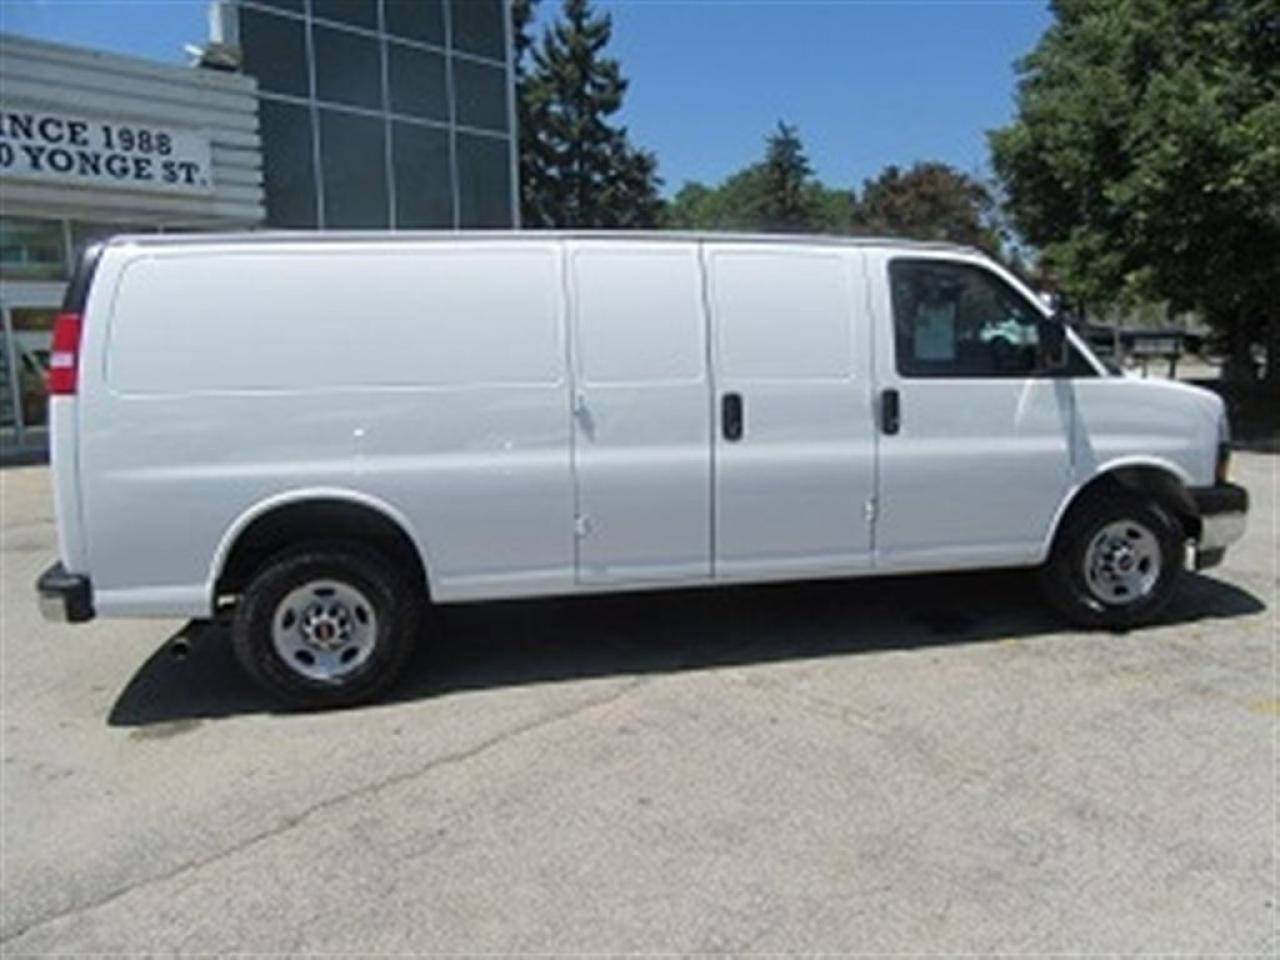 2018 gmc cargo van for sale